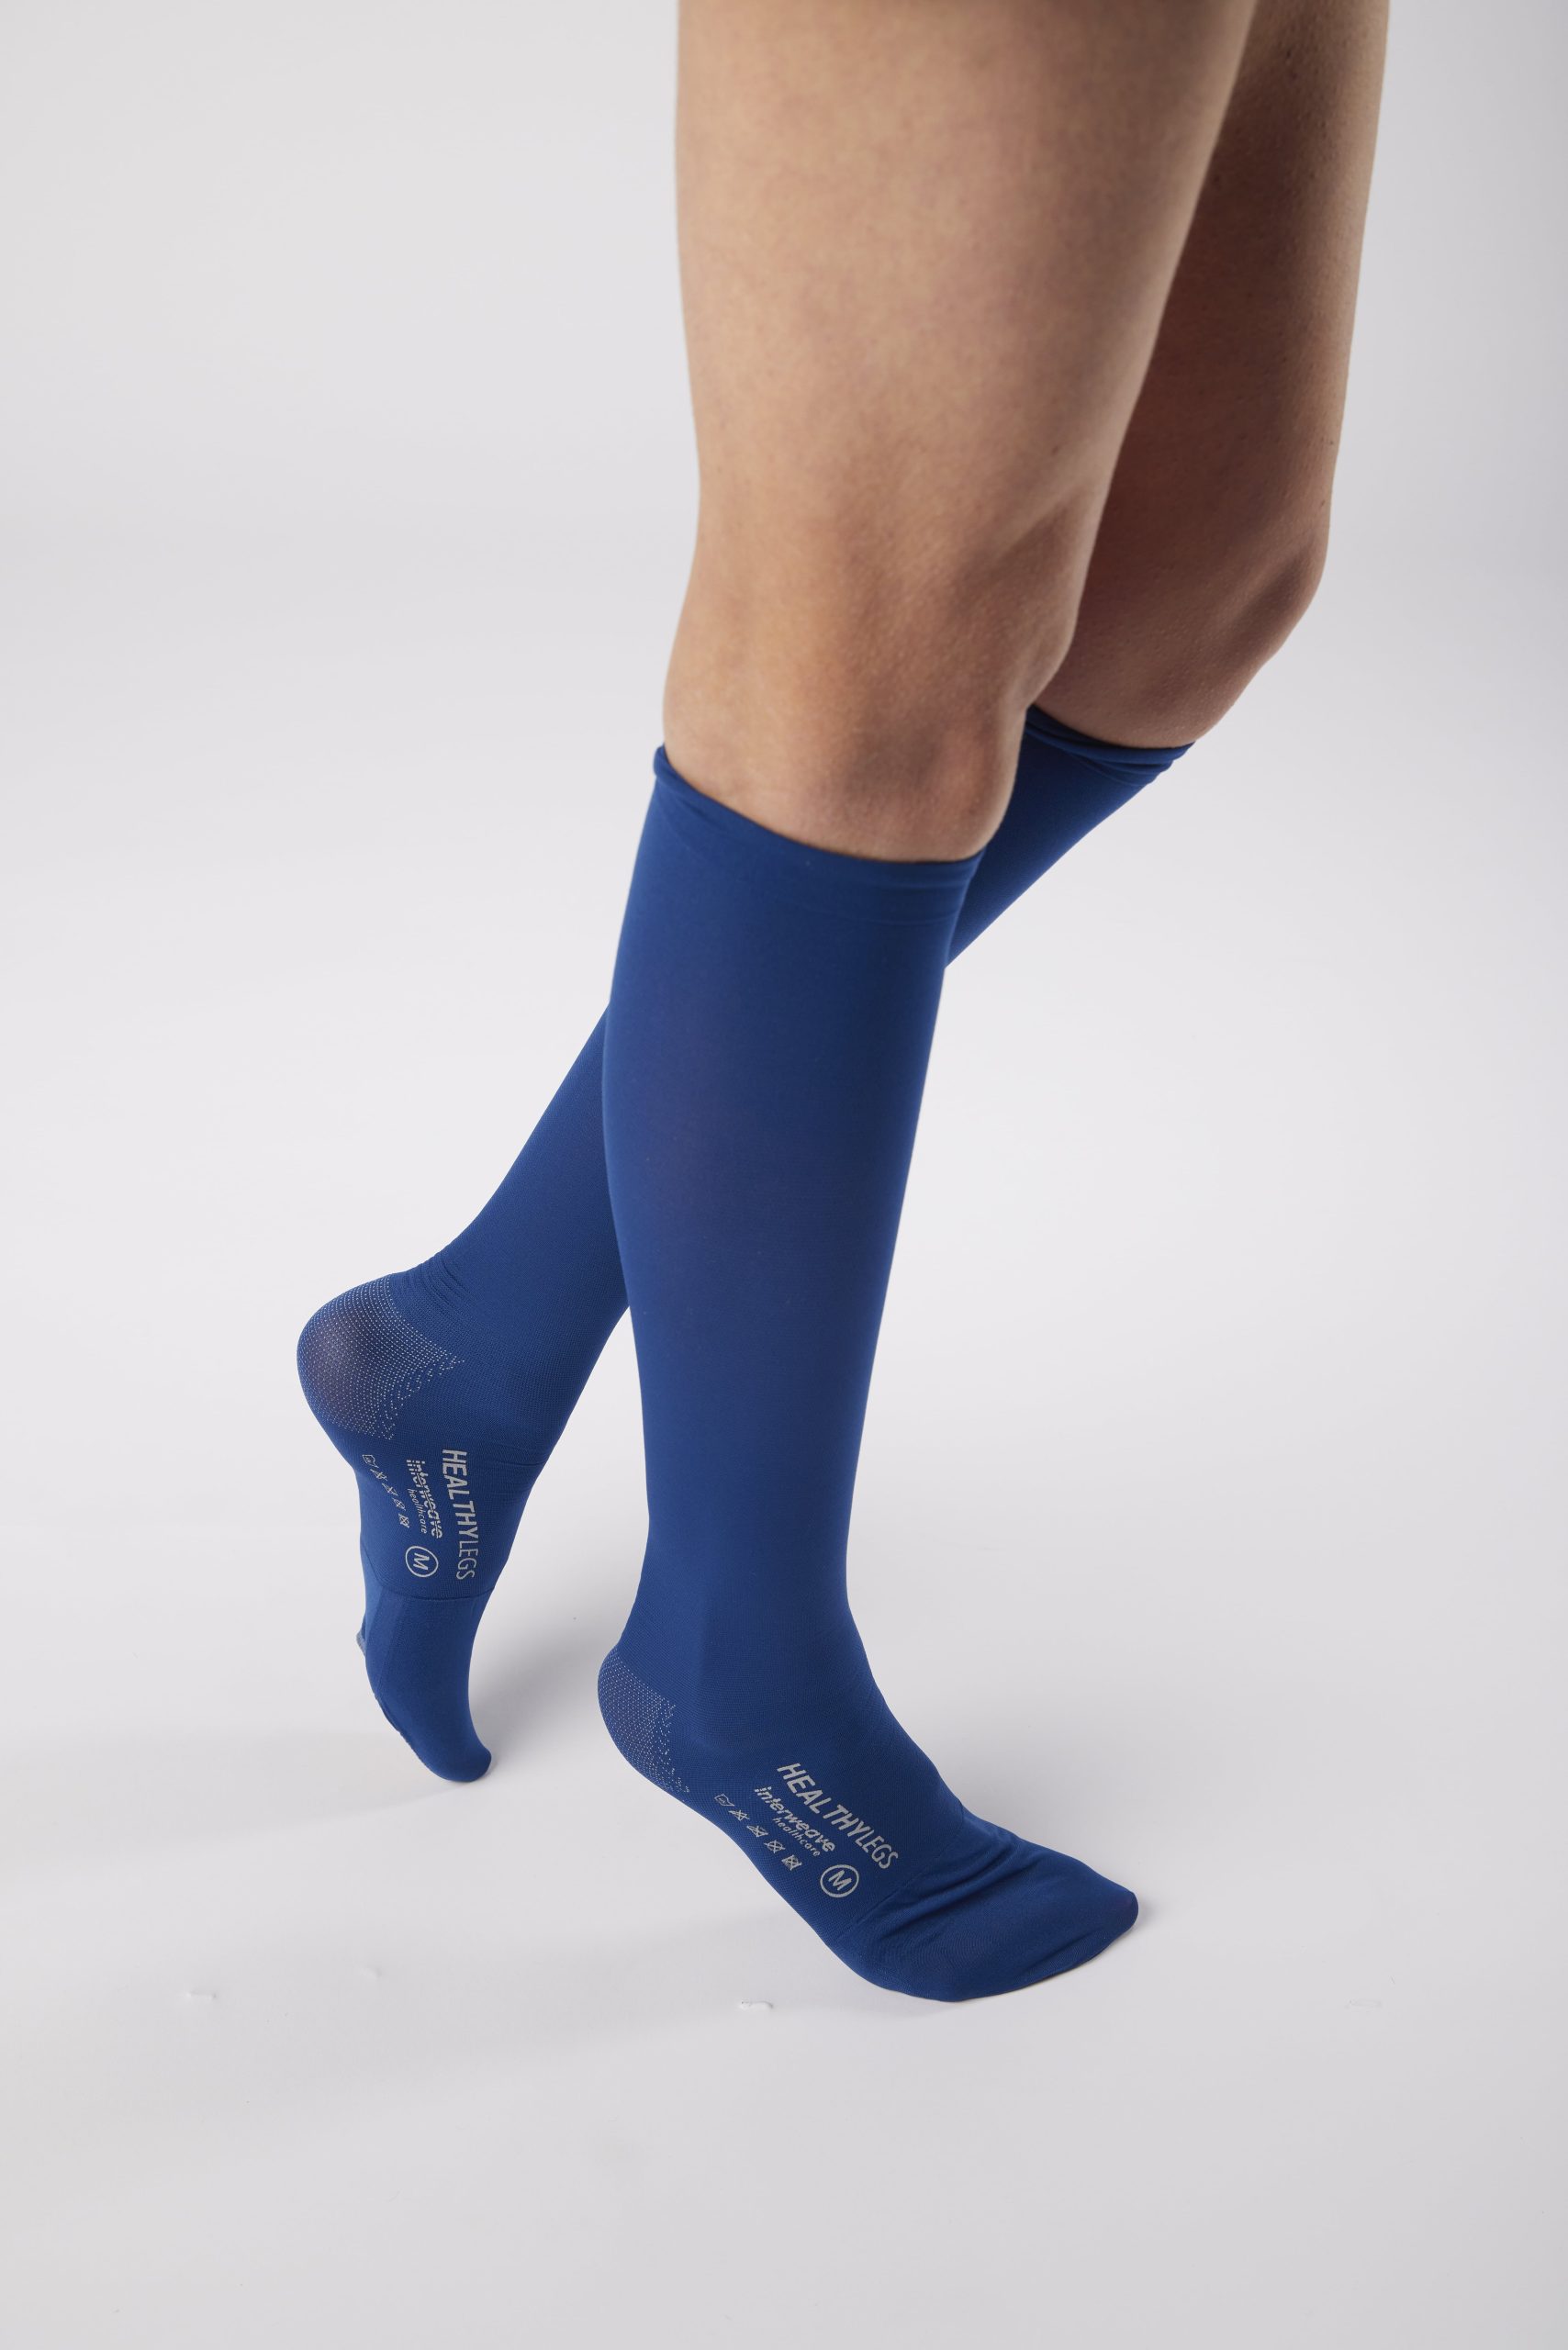 Premium Below Knee Stockings